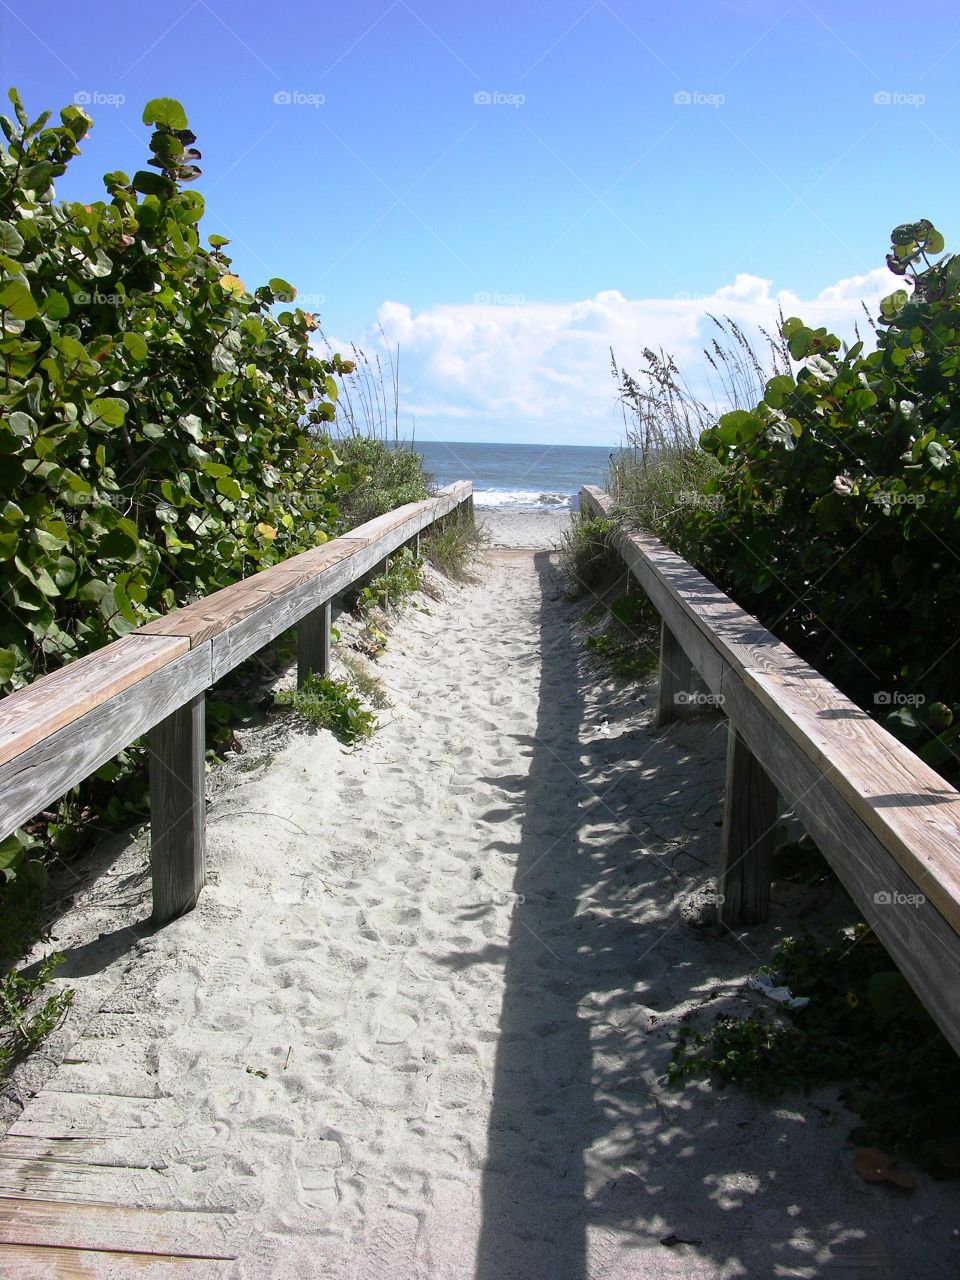 Florida coast 